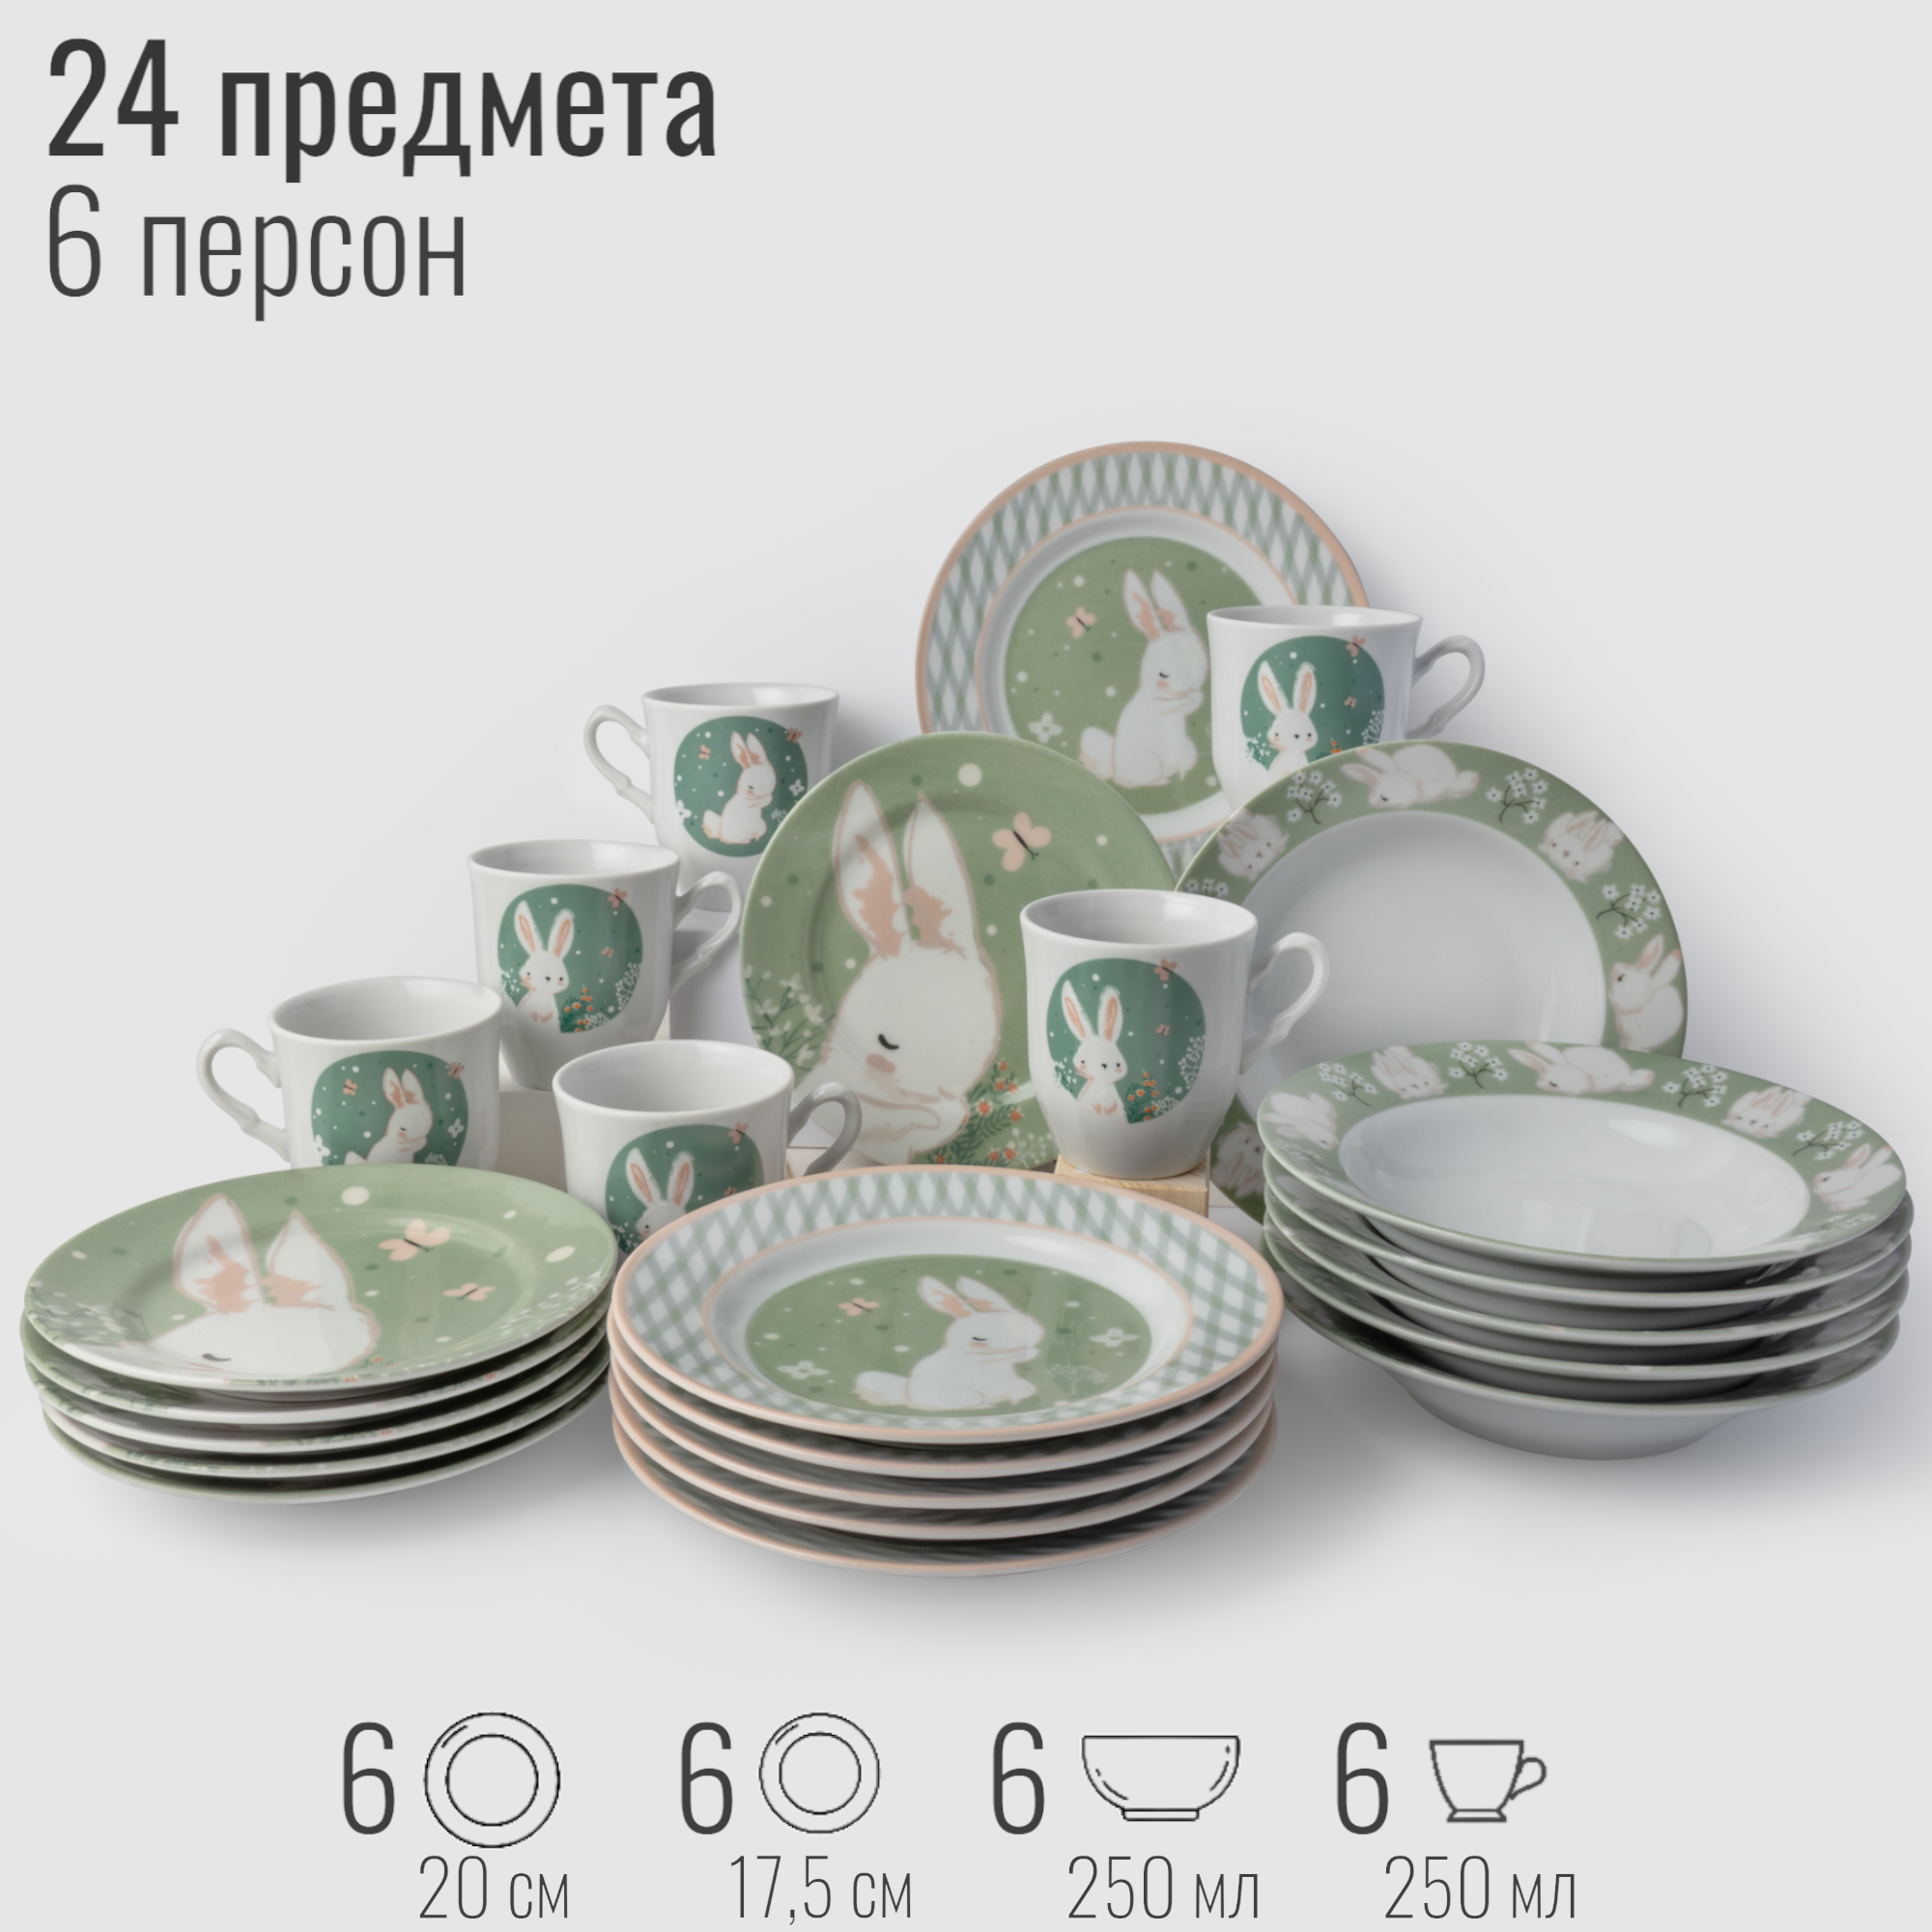 Столовый набор посуды на 6 персон, 24 предмета "Зайка", фарфор, сервиз обеденный